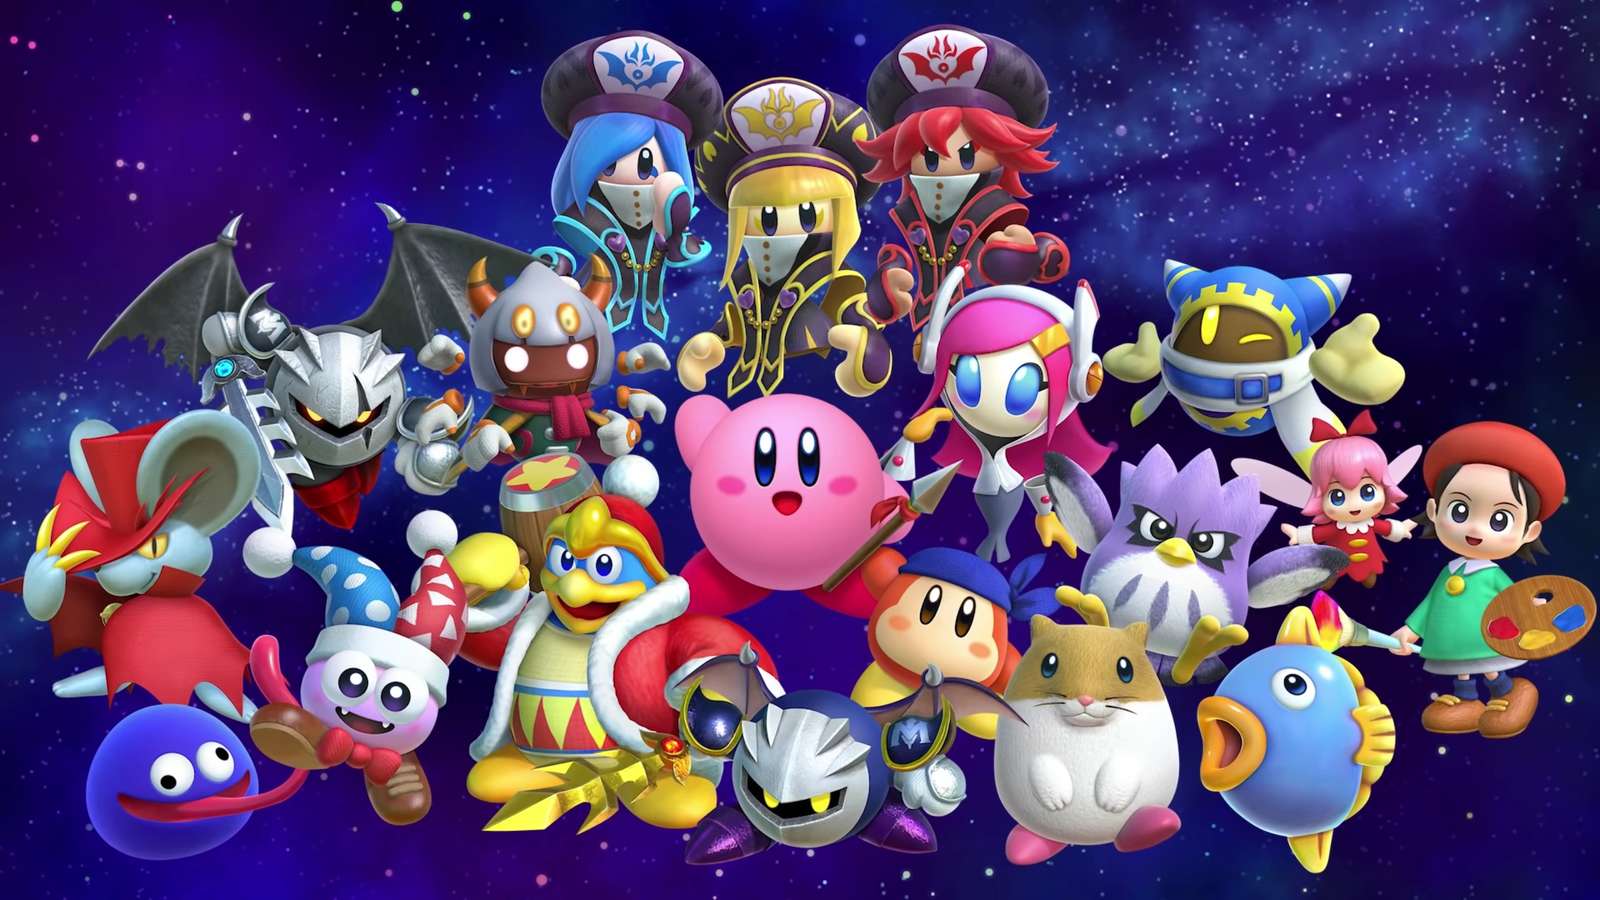 Kirbyfriends puzzle online